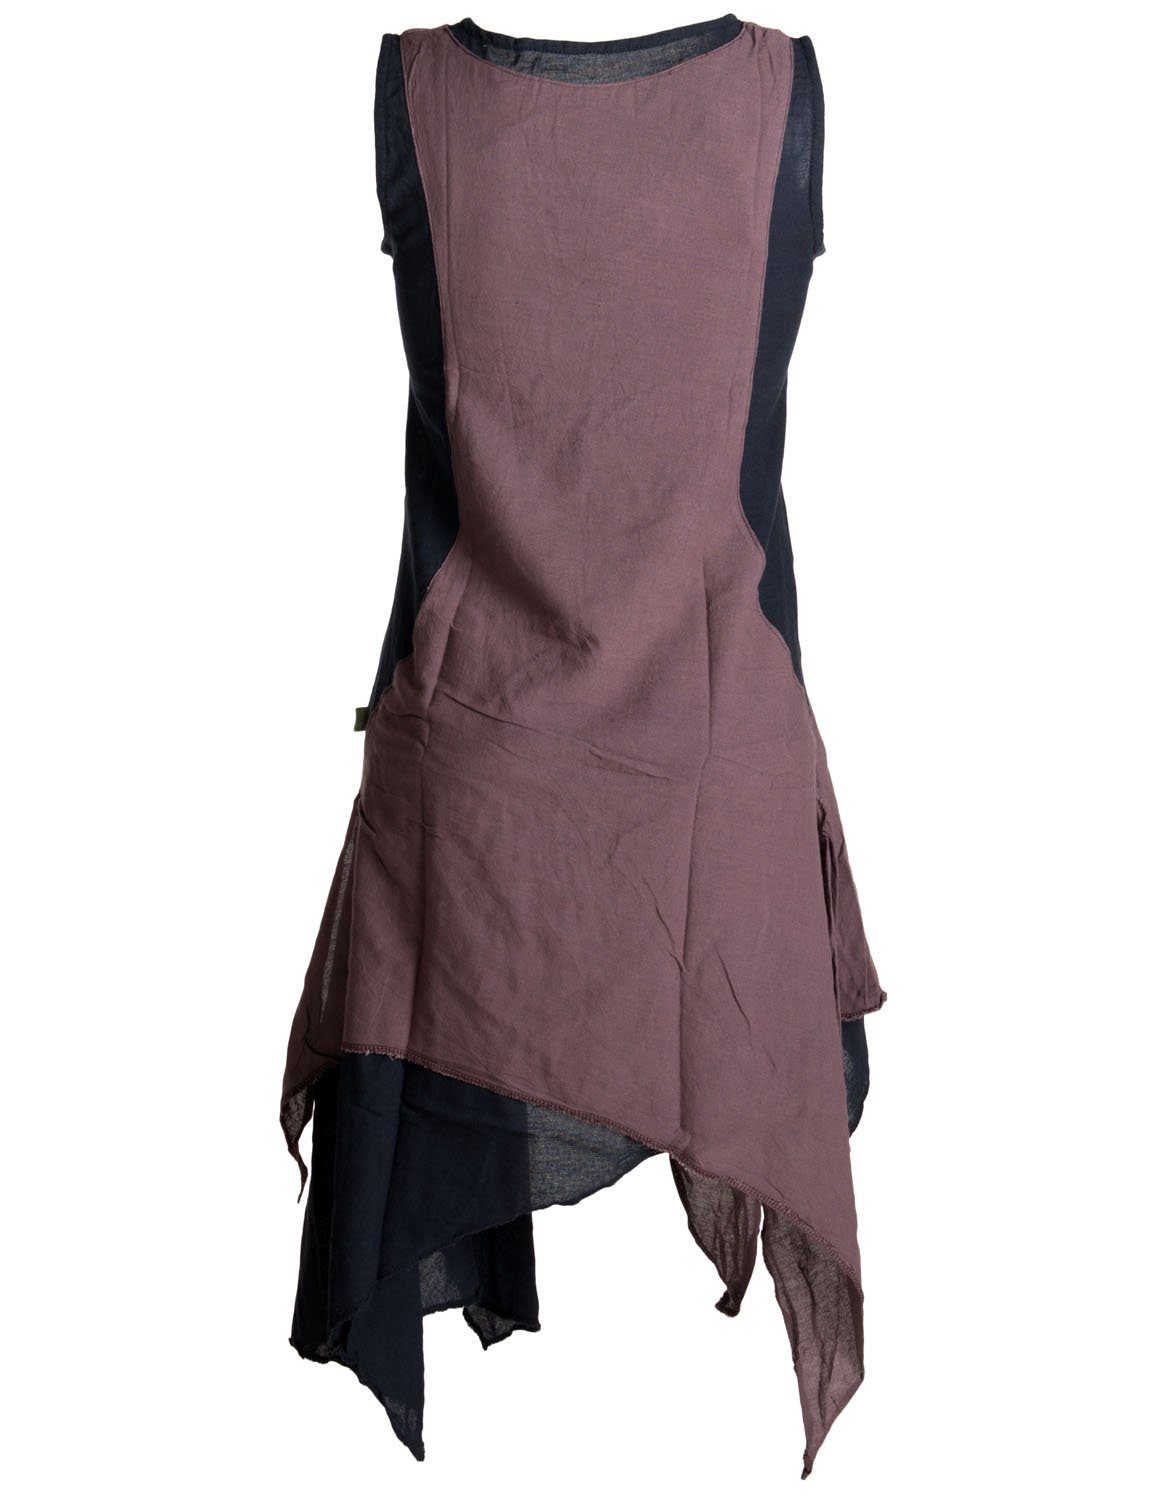 Sommerkleid Baumwolle handgewebte Lagenlook Goa, Hippie Ärmelloses schwarz-braun Vishes Kleid Boho, Style